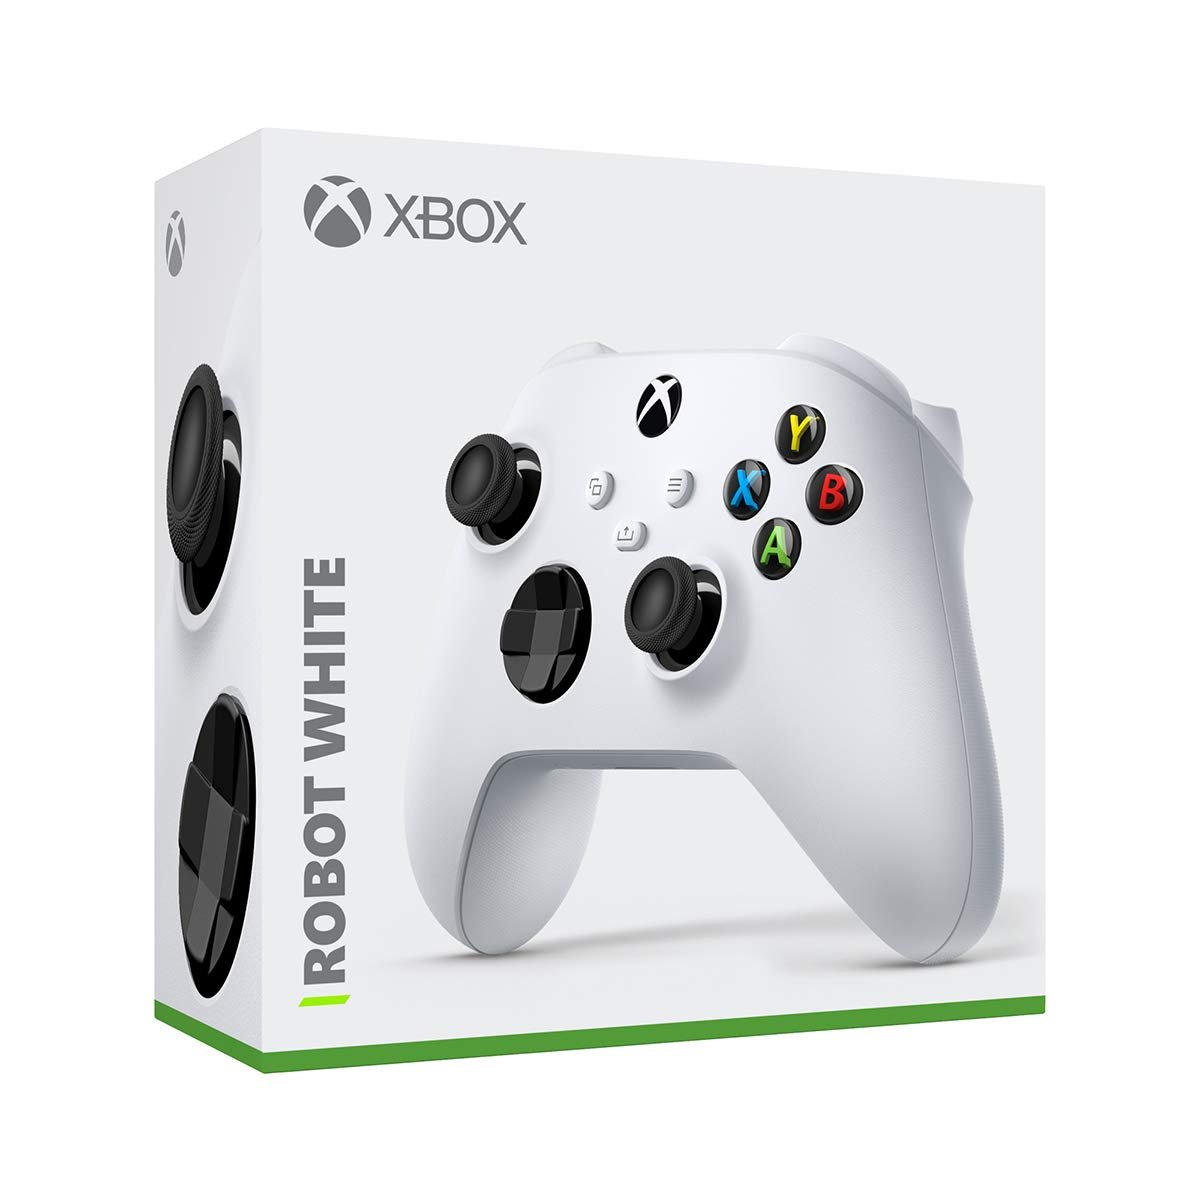 Xbox Core Controller series S|X - Robot White - Level UpMicrosoftXbox Accessories889842654714